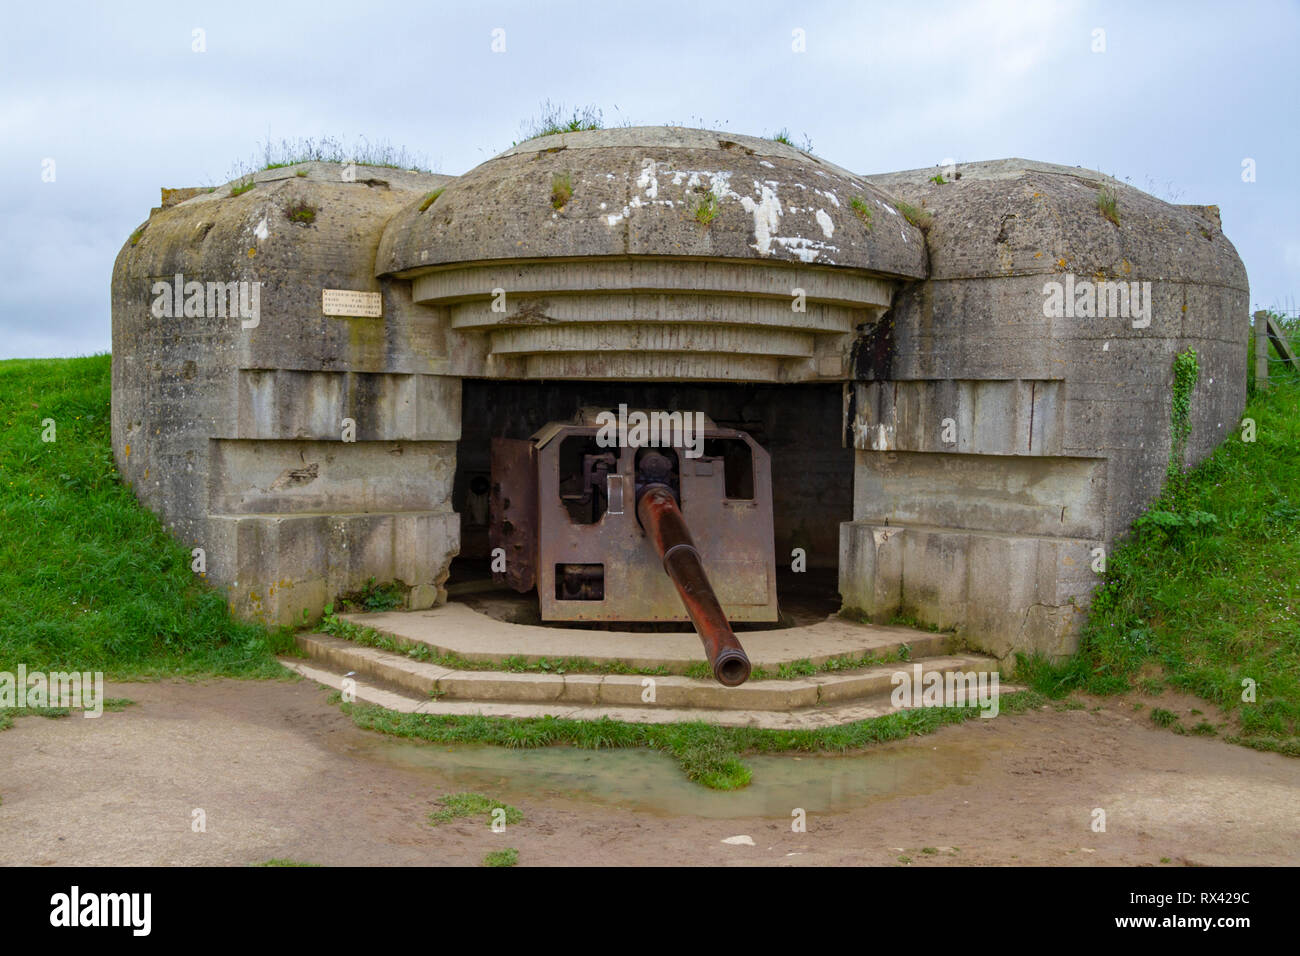 Un canon de 150 mm dans l'une des quatre vantaux des longues-sur-Mer, la batterie située à l'ouest d'Arromanches-les-Bains en Normandie, France. Banque D'Images